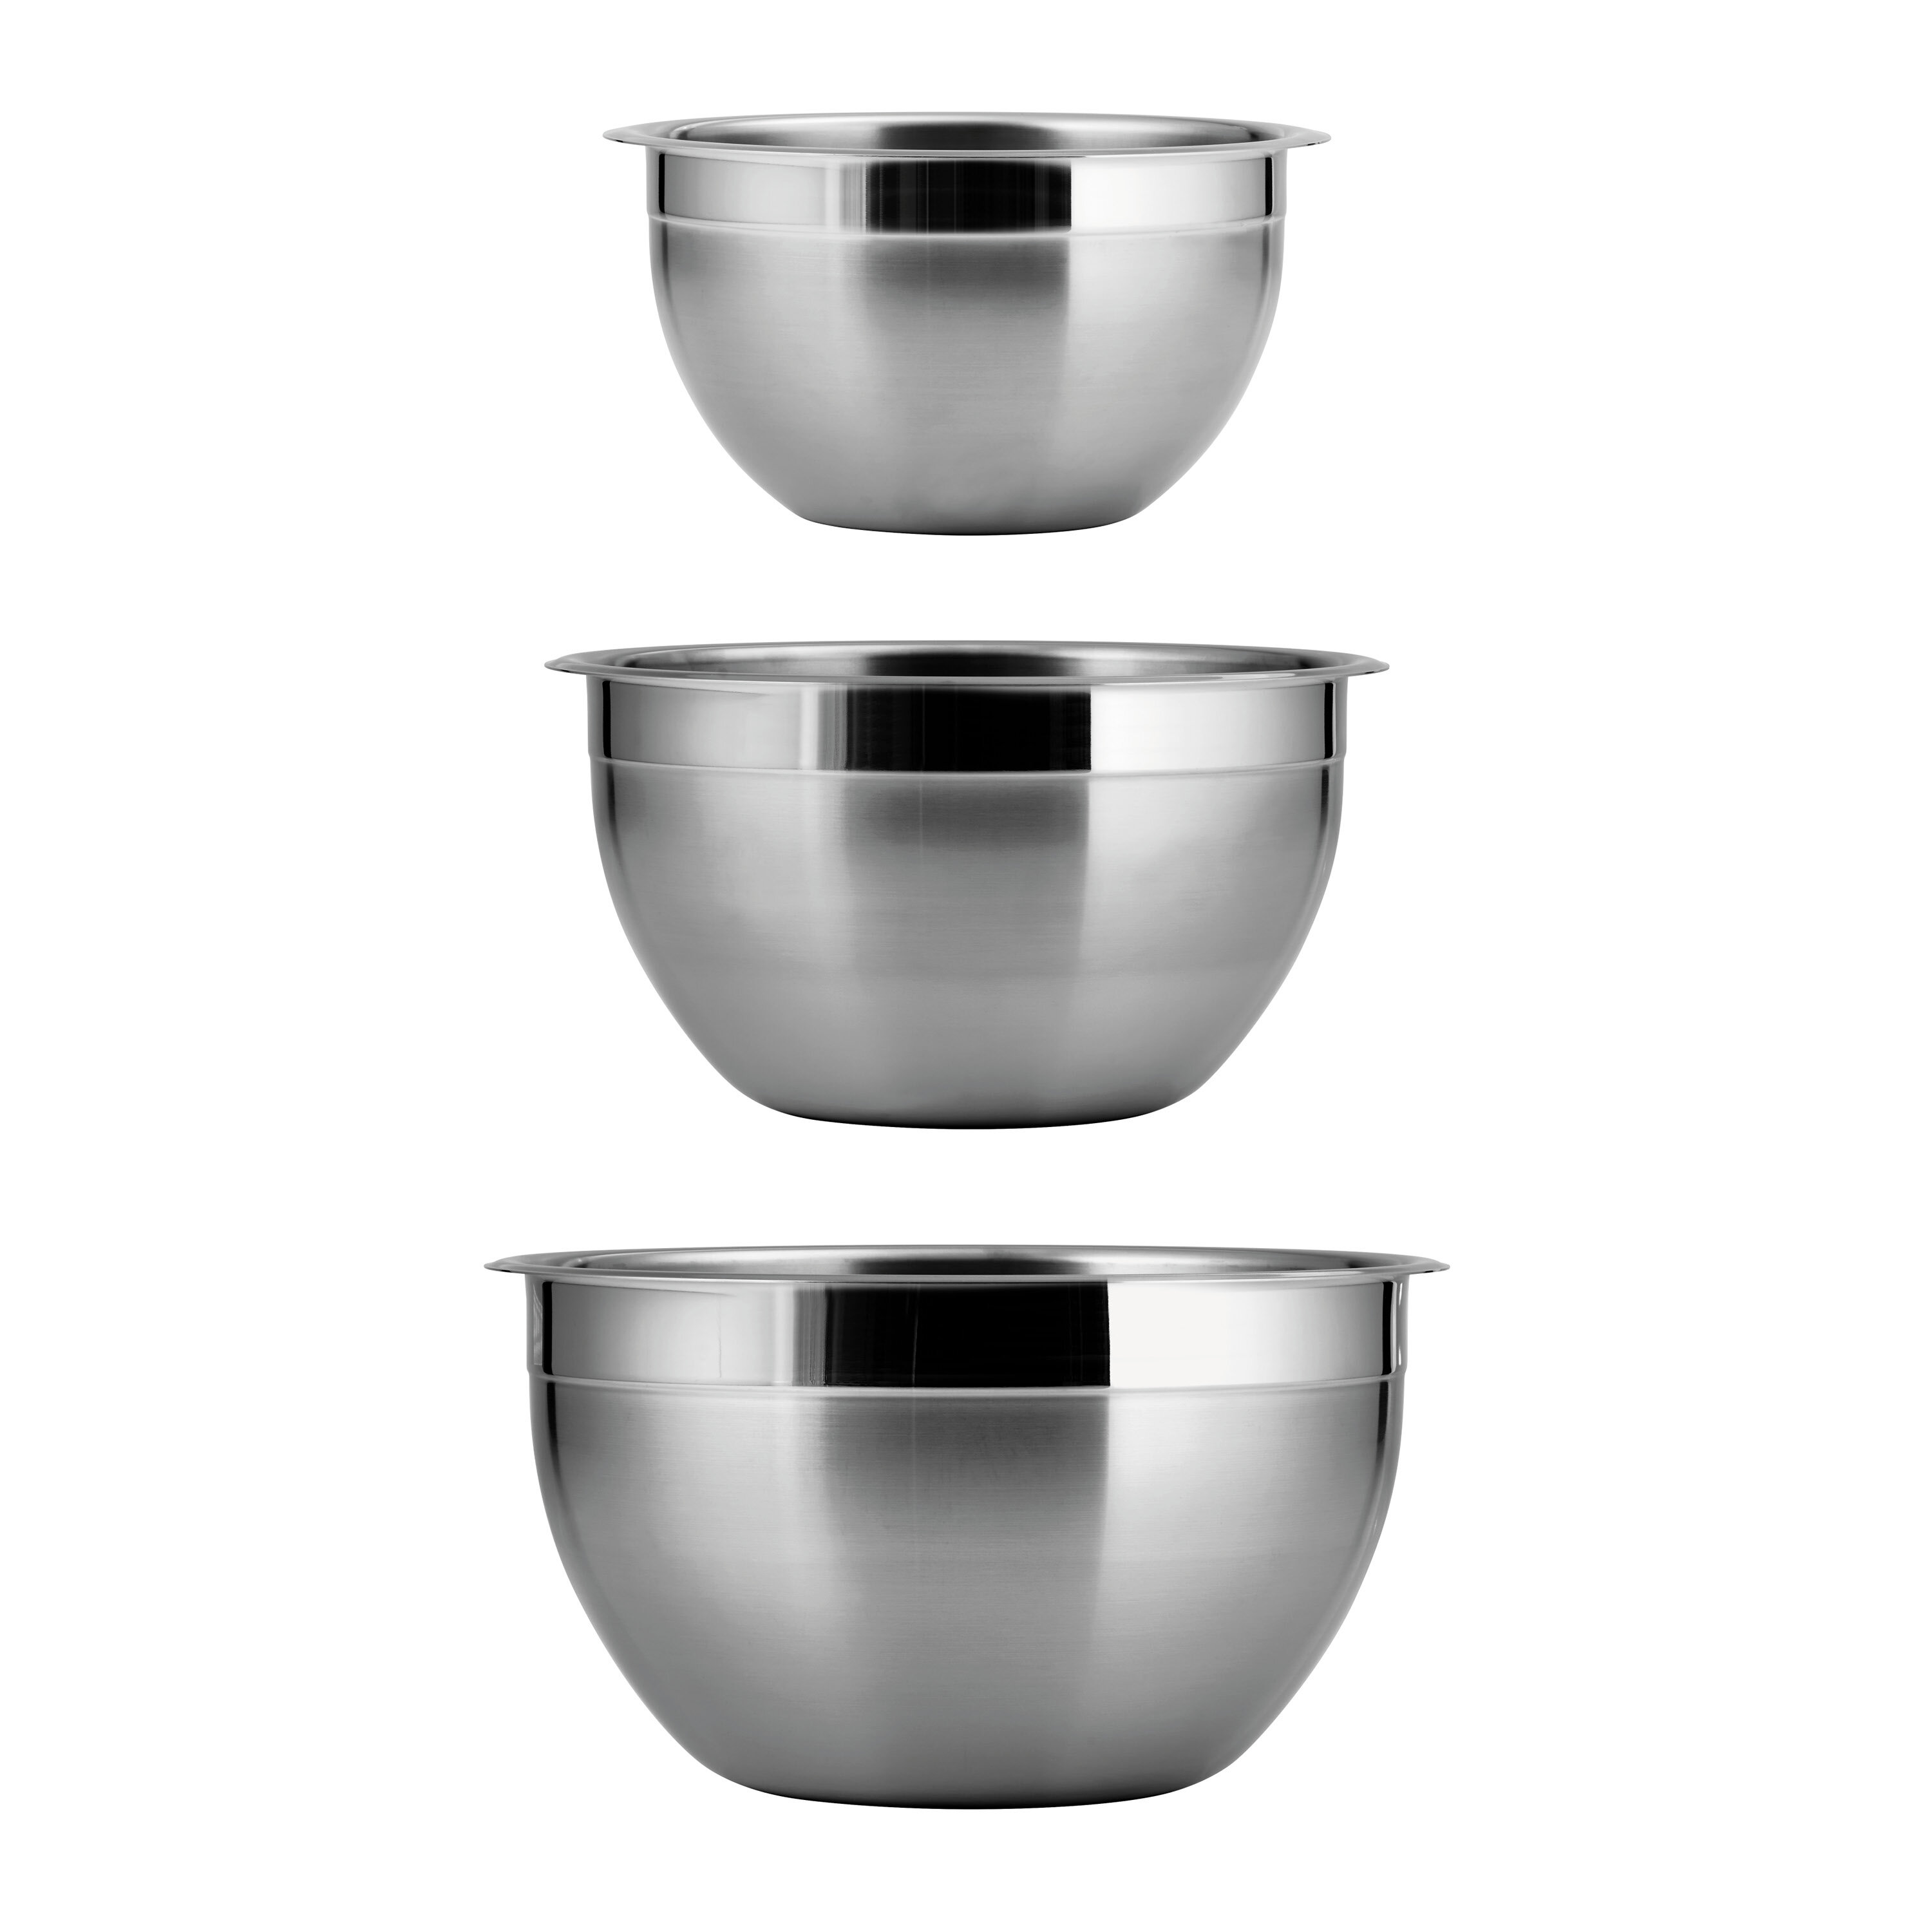 https://assets.wfcdn.com/im/24173034/compr-r85/5897/58974256/tramontina-gourmet-3-piece-stainless-steel-mixing-bowl-set.jpg